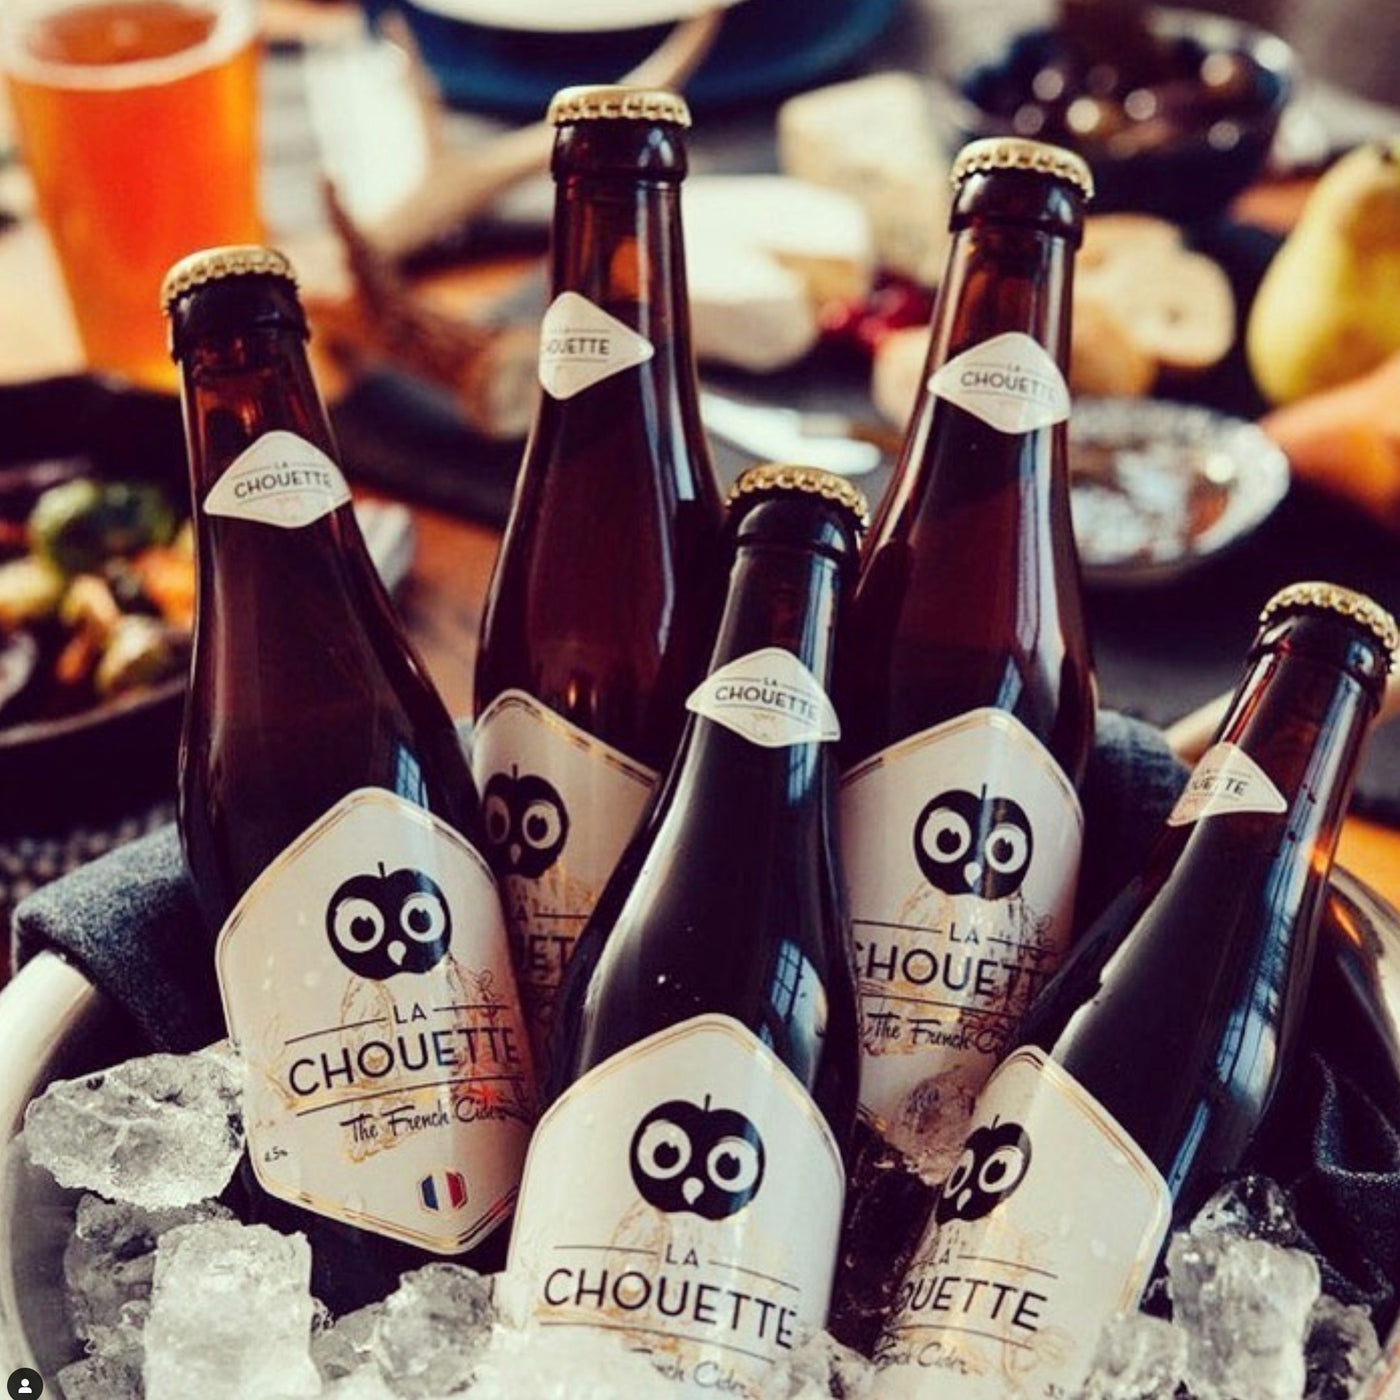 French Cider | La chouette Brut | 4.5% | 750ml